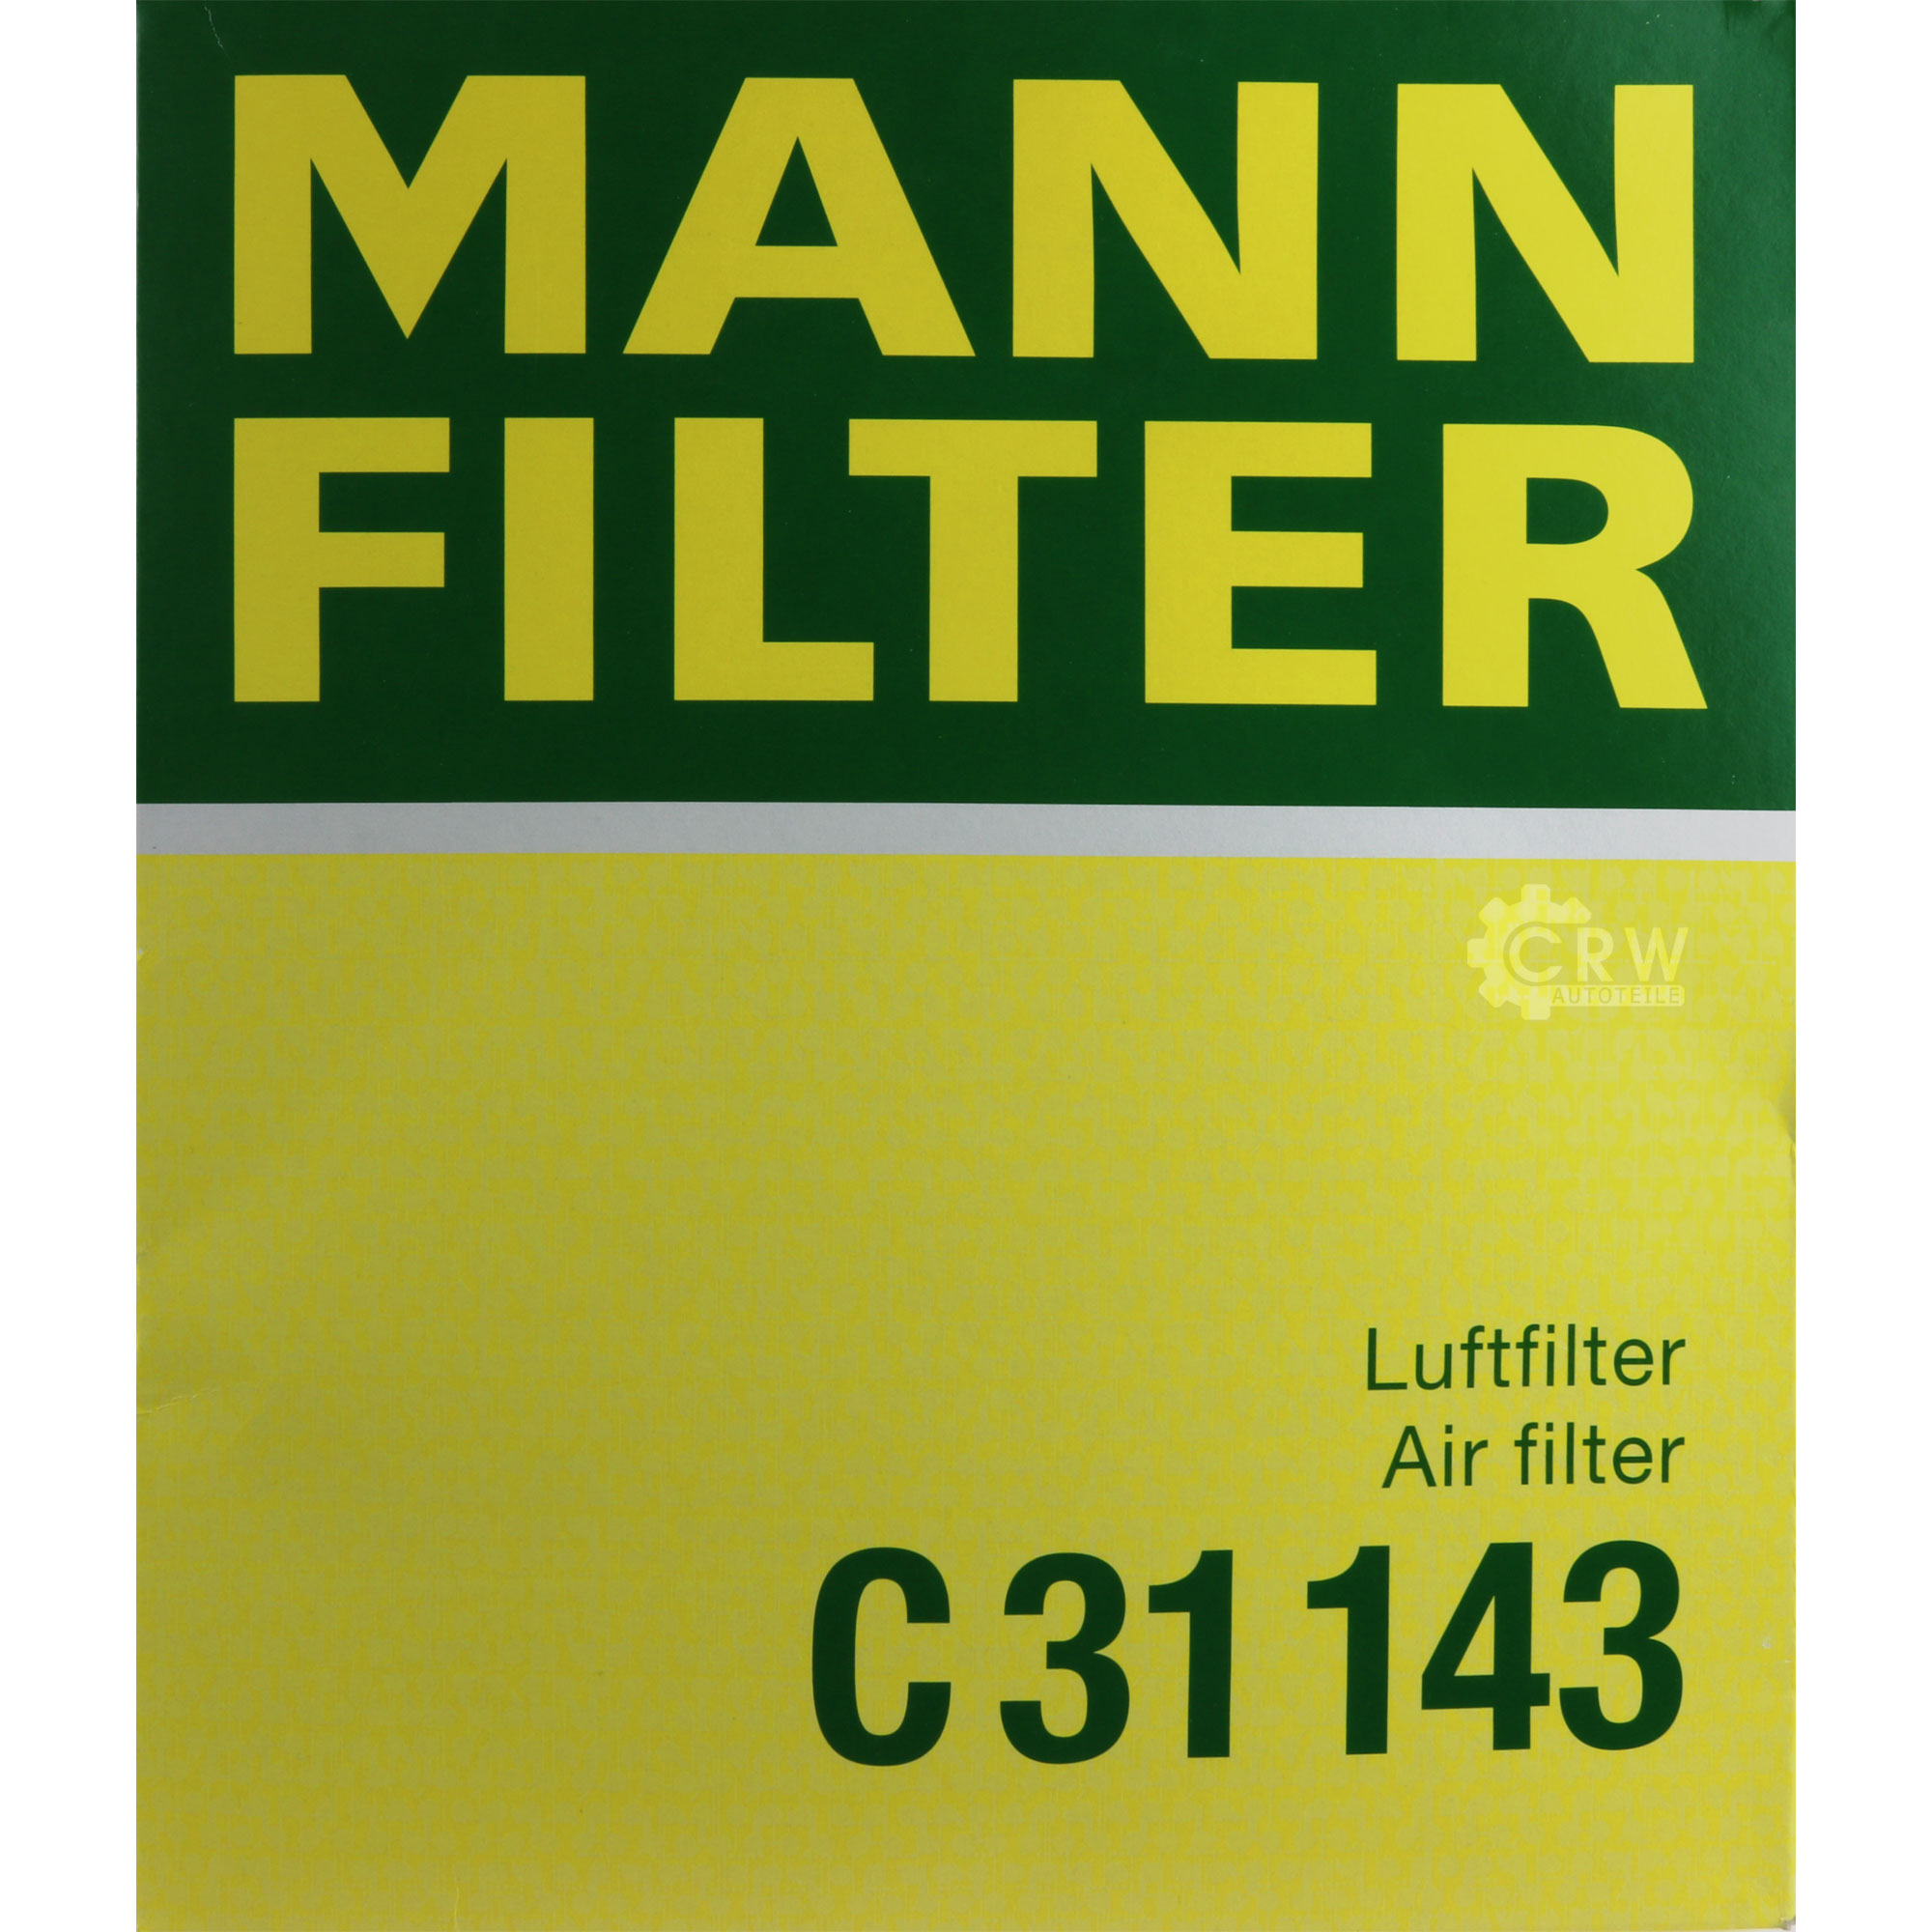 MANN-FILTER Luftfilter für BMW 5er Touring E61 520d 535d E60 E64 635d Alpina B5